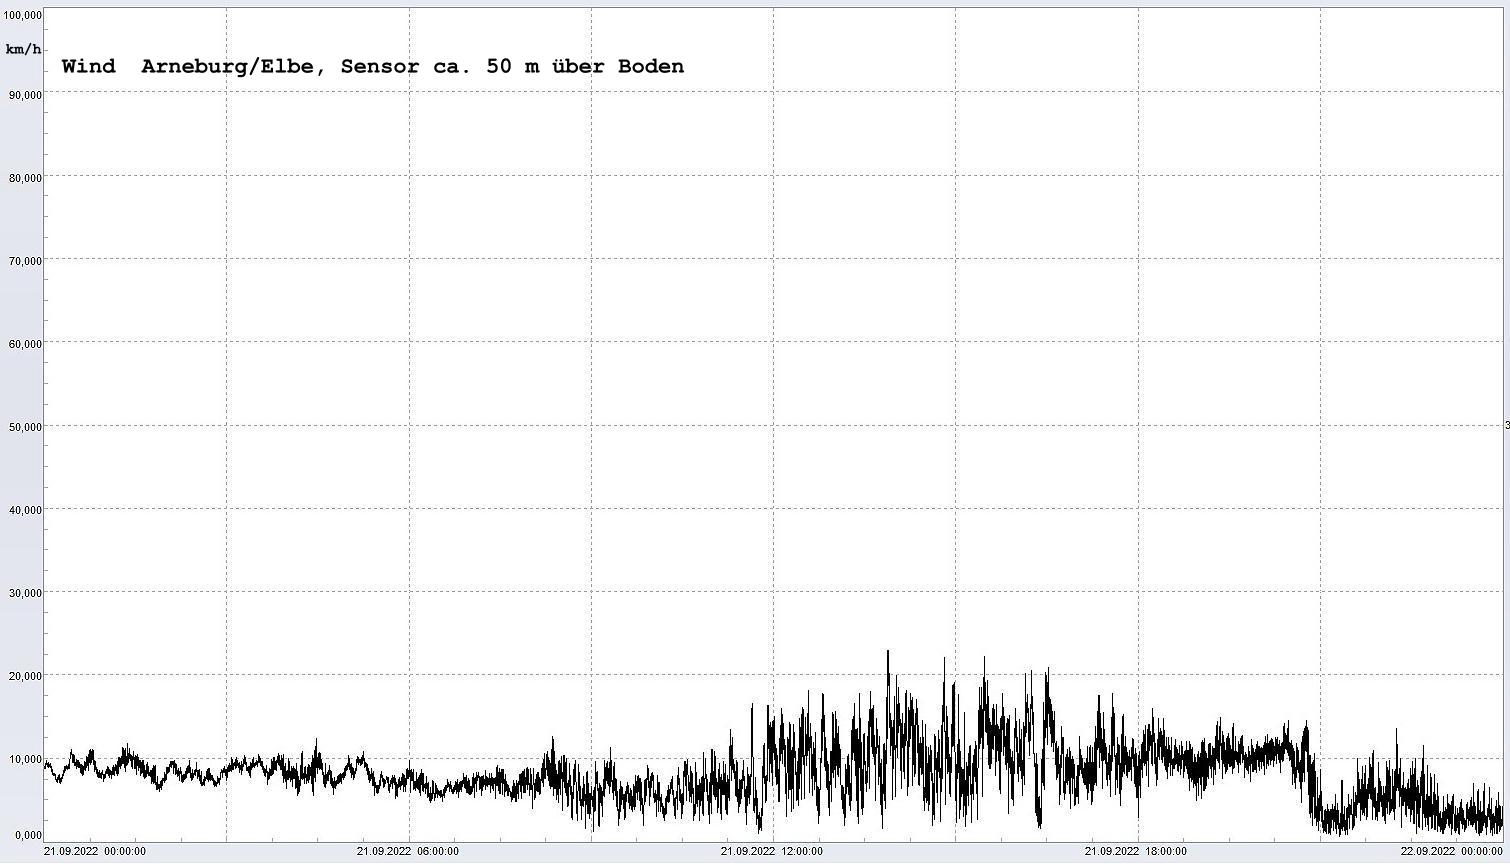 Arneburg Winddaten 21.09.2022, 
  Sensor auf Gebude, ca. 50 m ber Erdboden, 5s-Aufzeichnung